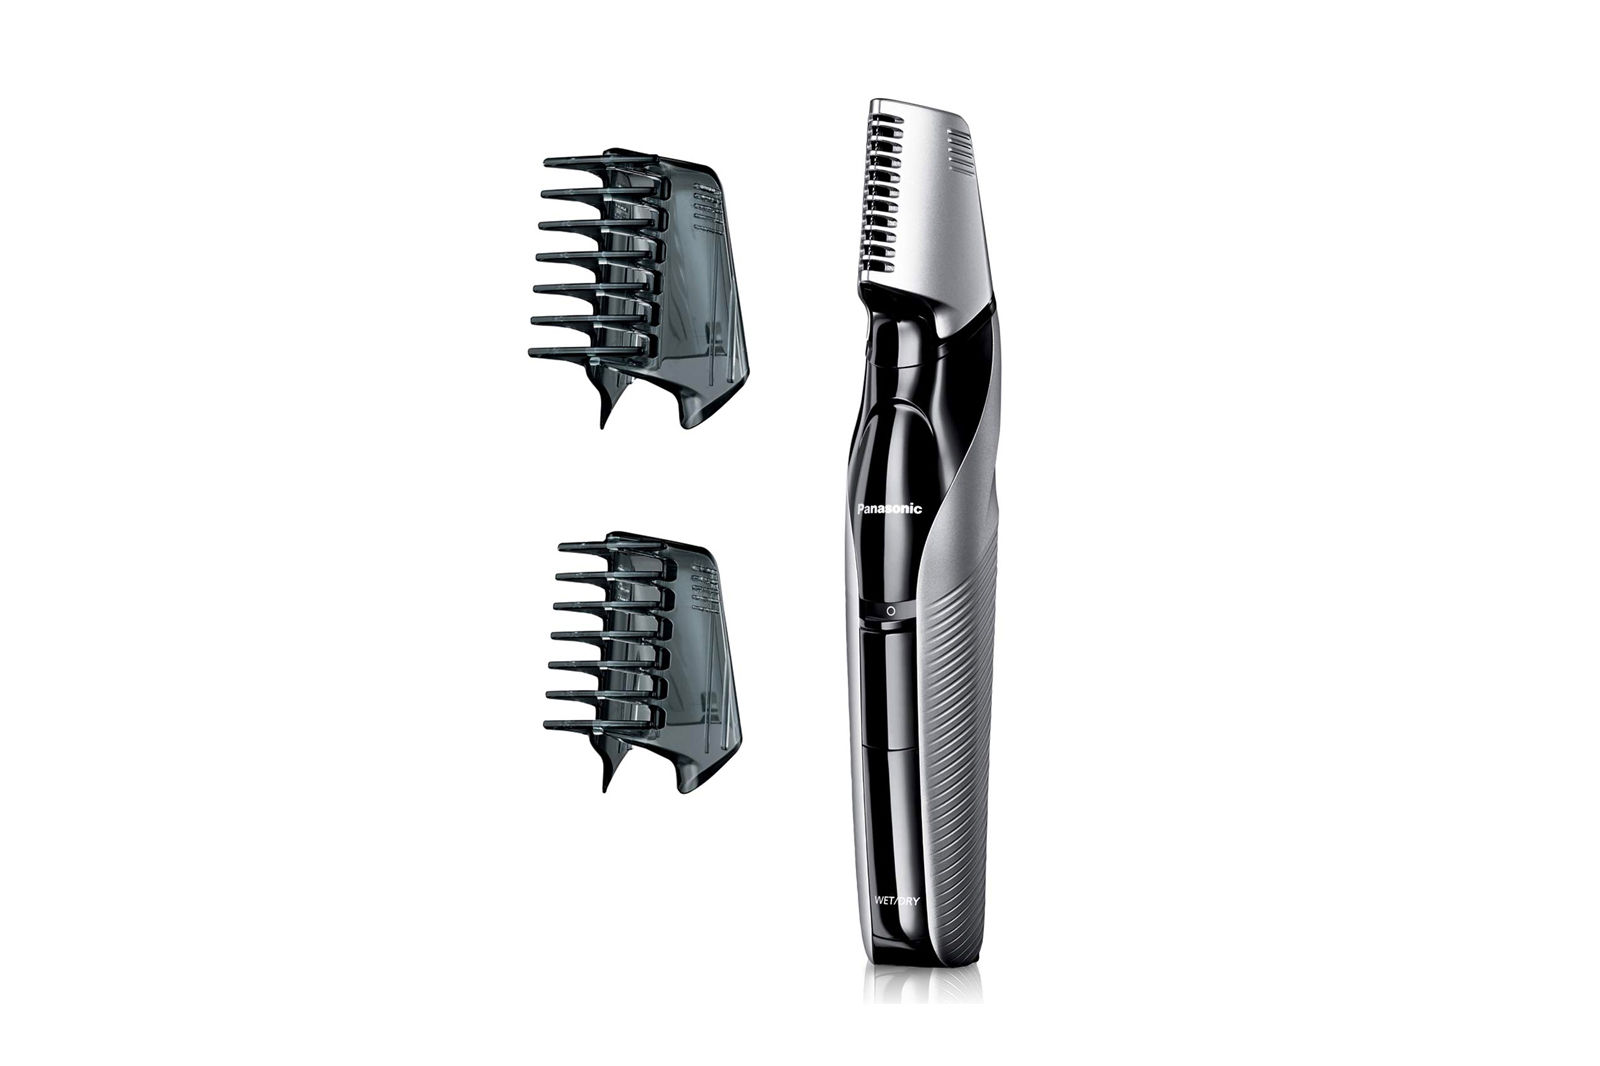 Panasonic Electric Body Hair Trimmer and Groomer for Men ER-GK60-S